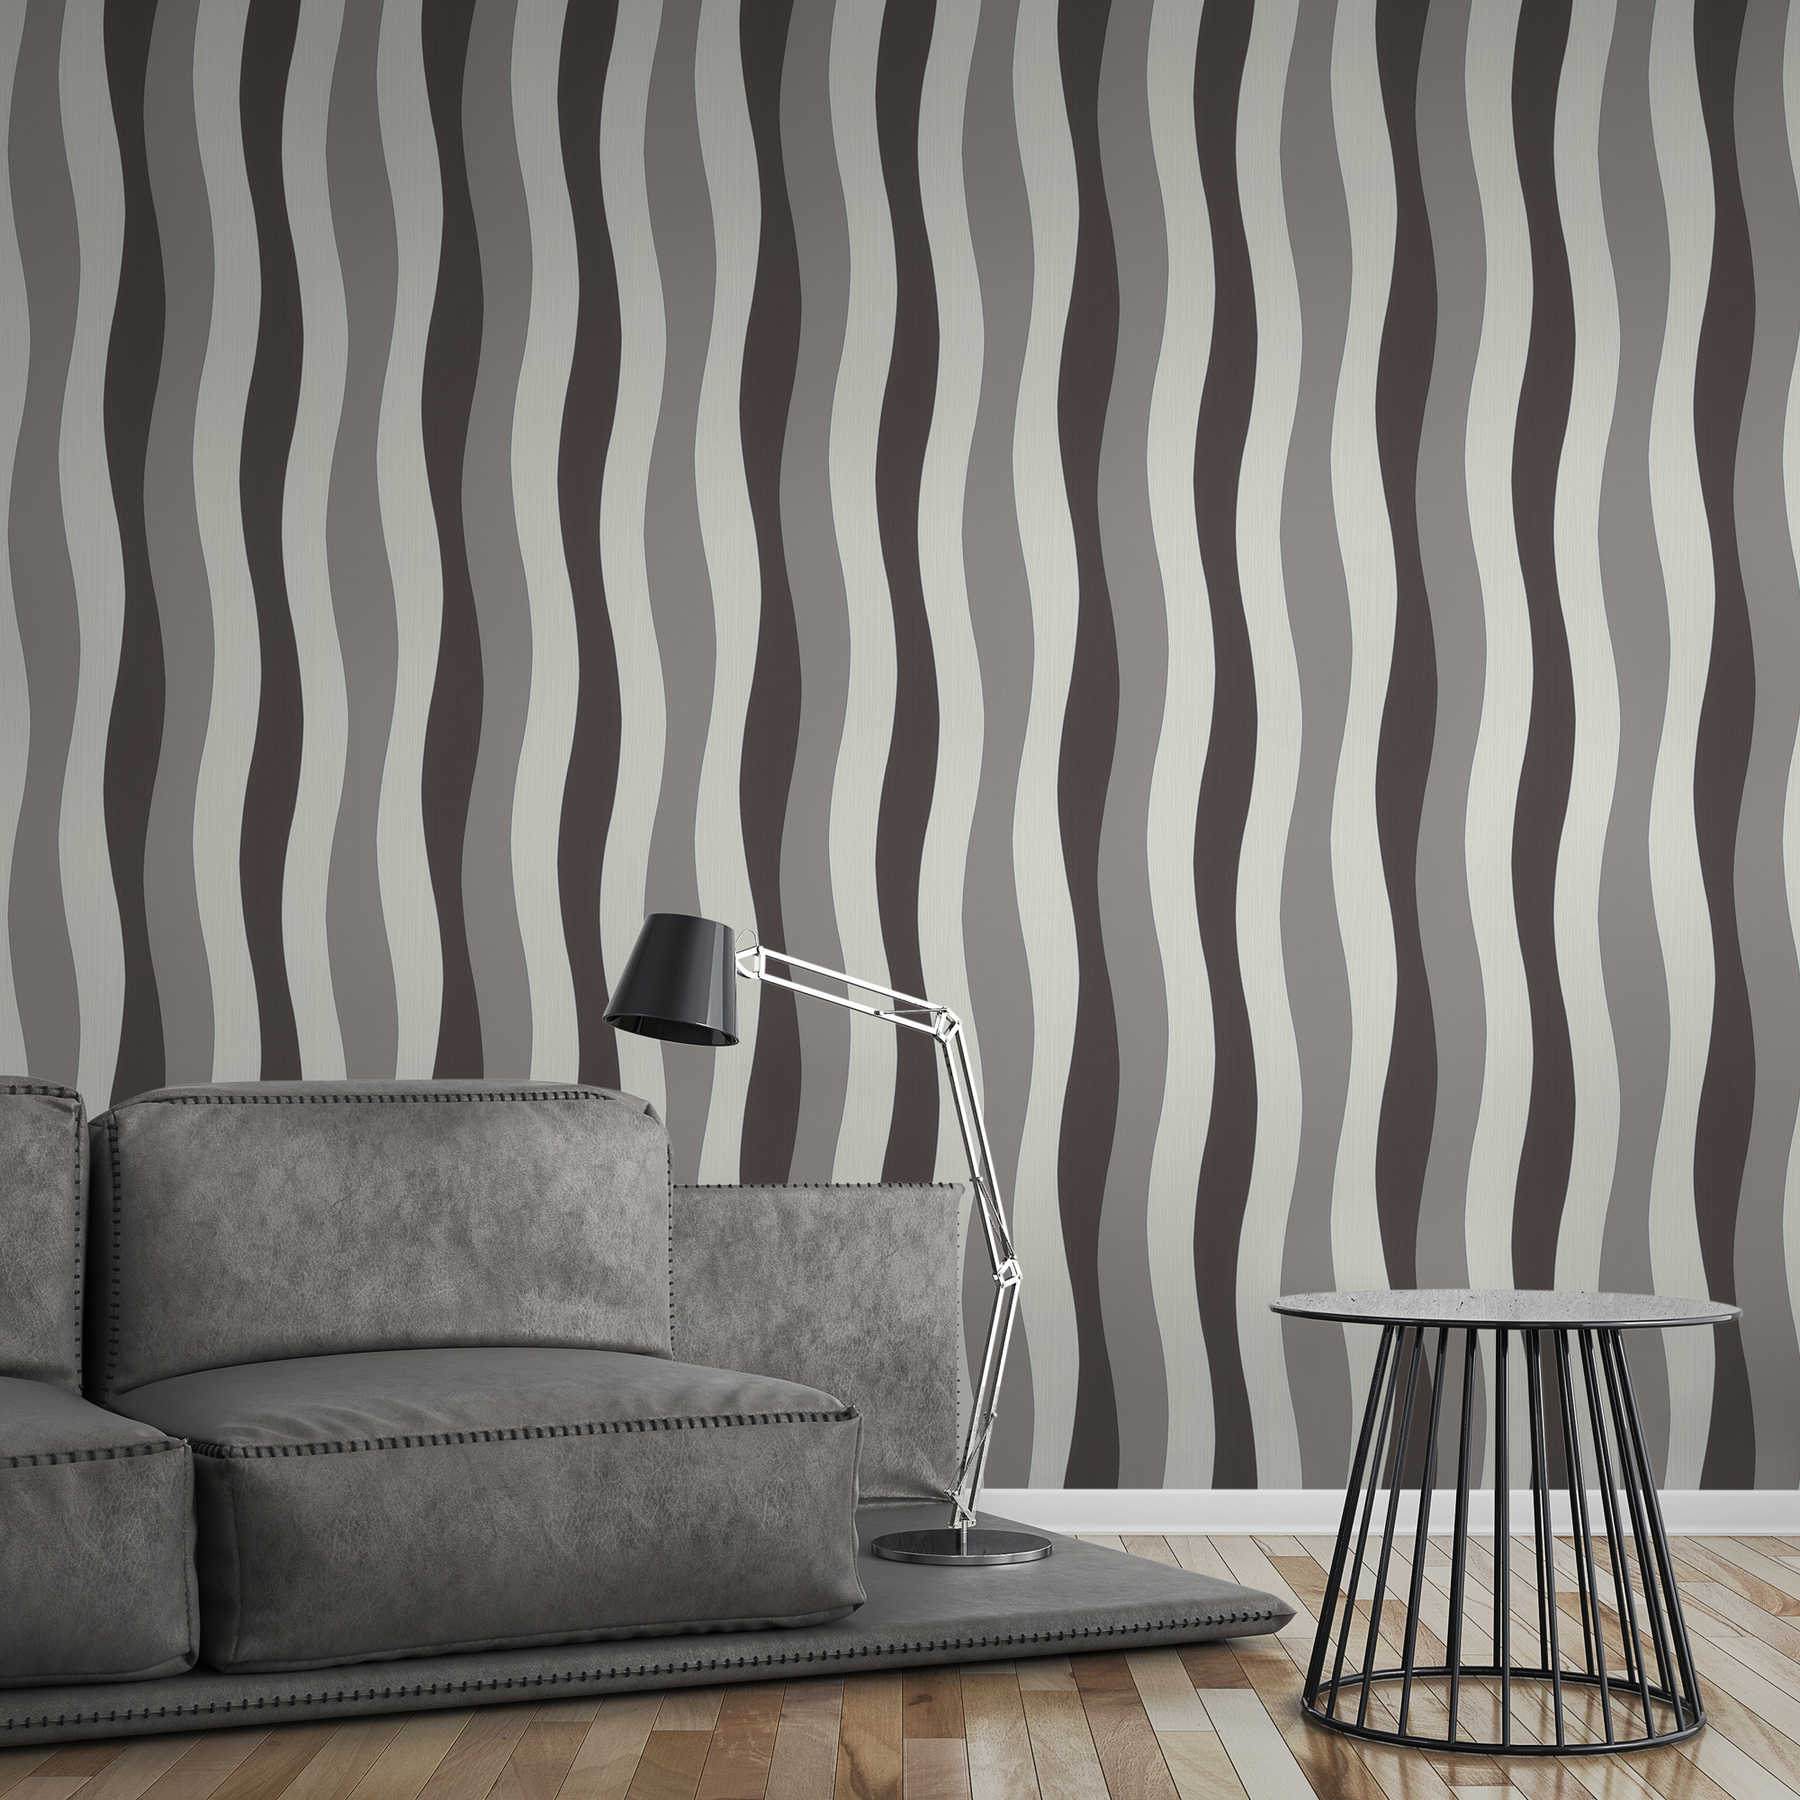             Wallpaper lines design with metallic effect - cream, grey
        